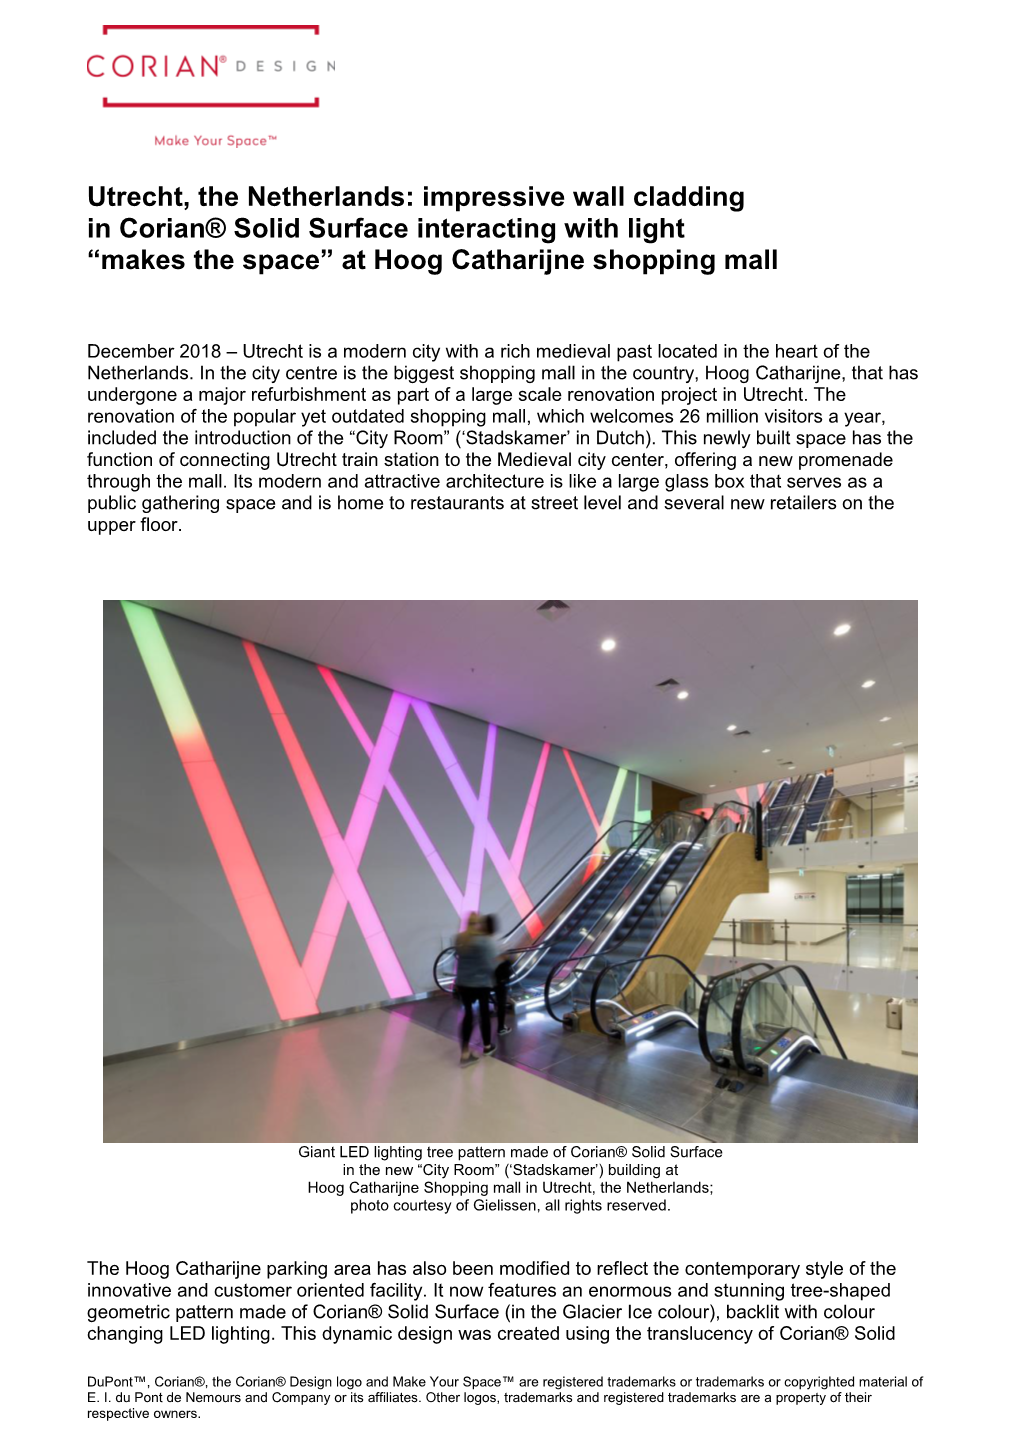 Utrecht Shopping Mall